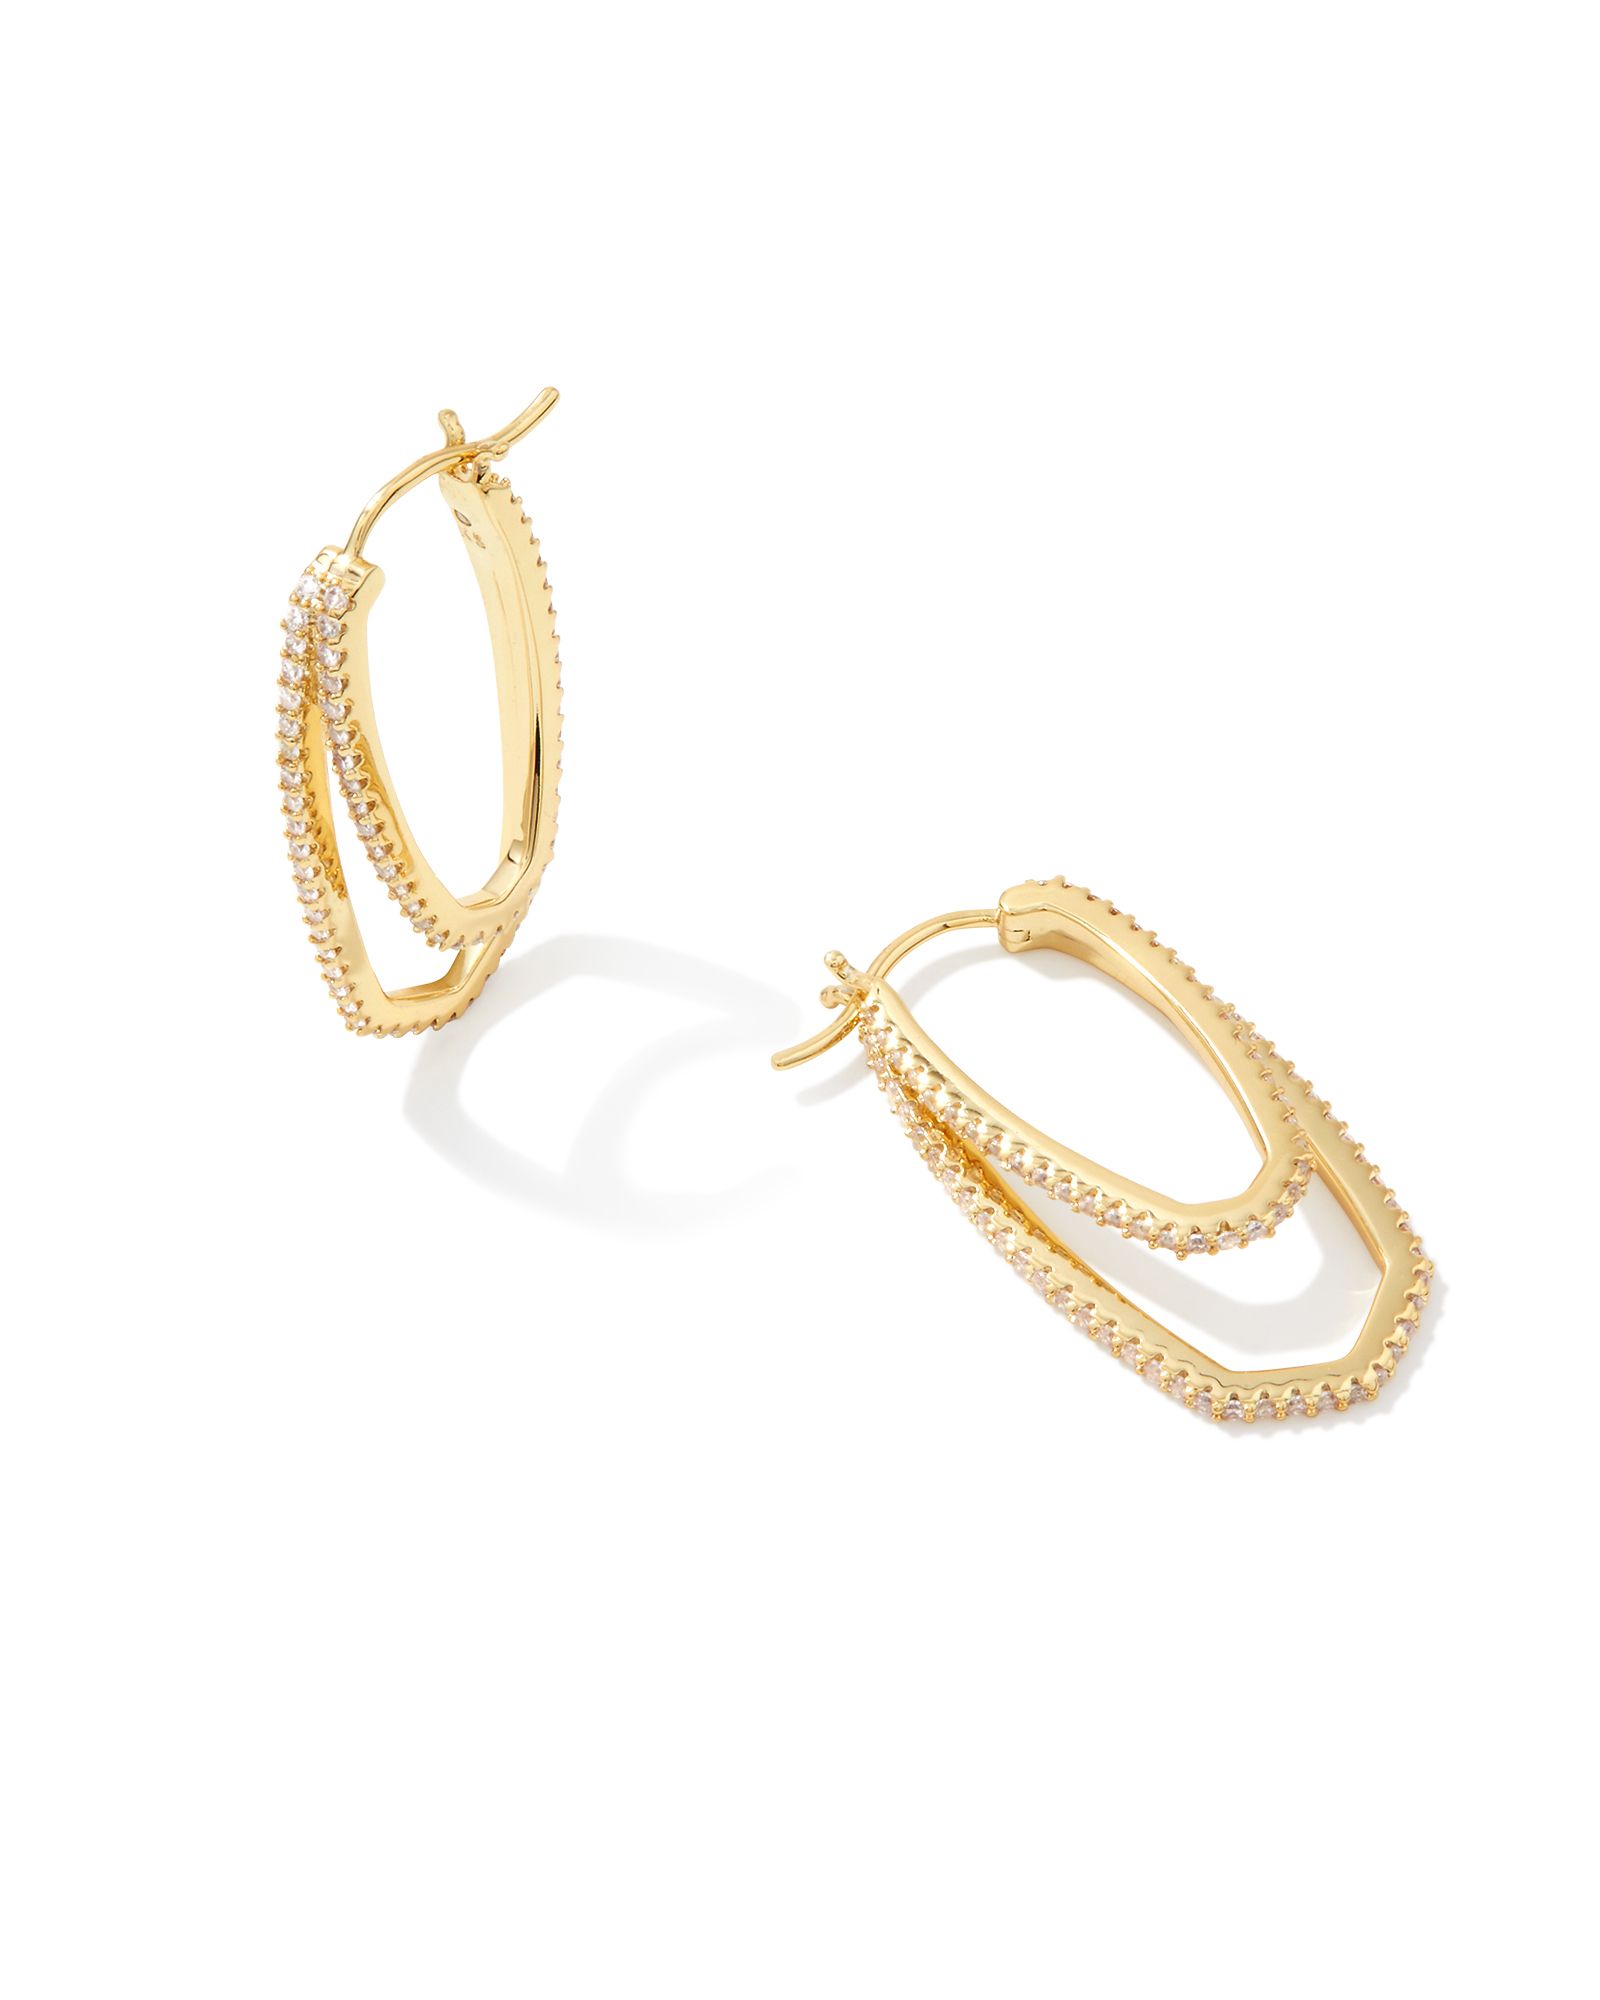 Murphy Gold Hoop Earrings in White Crystal | Kendra Scott